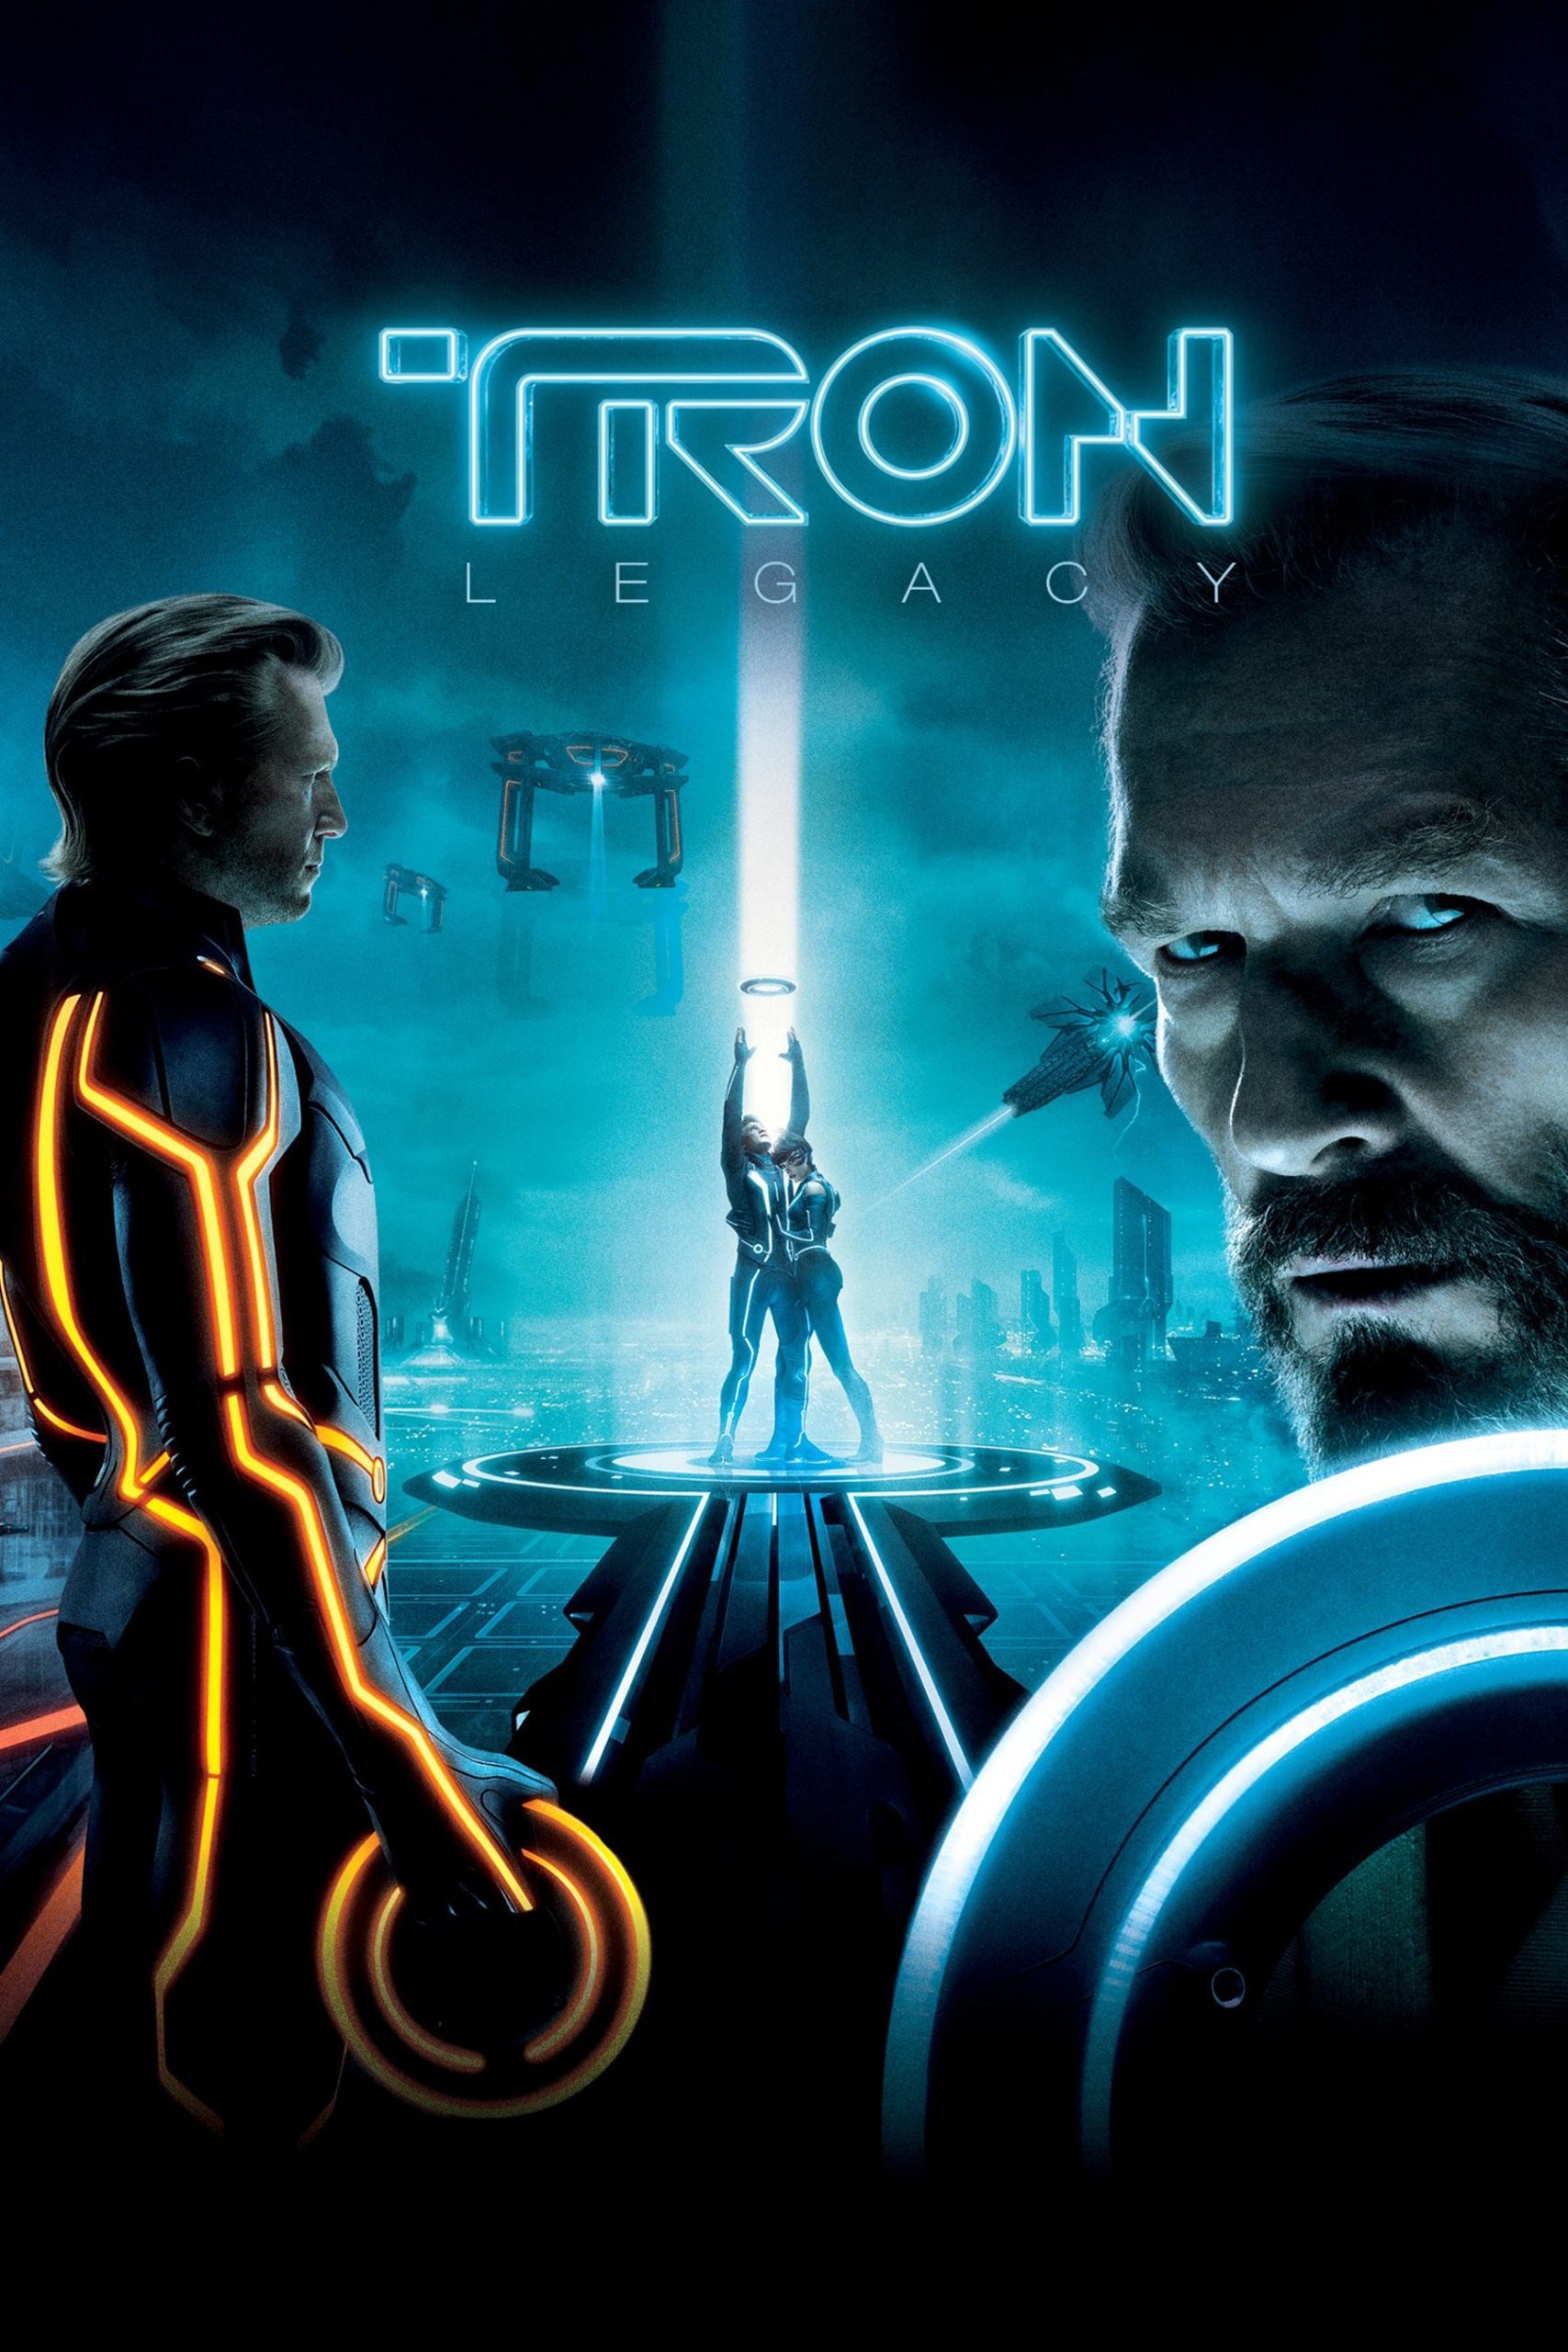 Tron: Legacy Poster